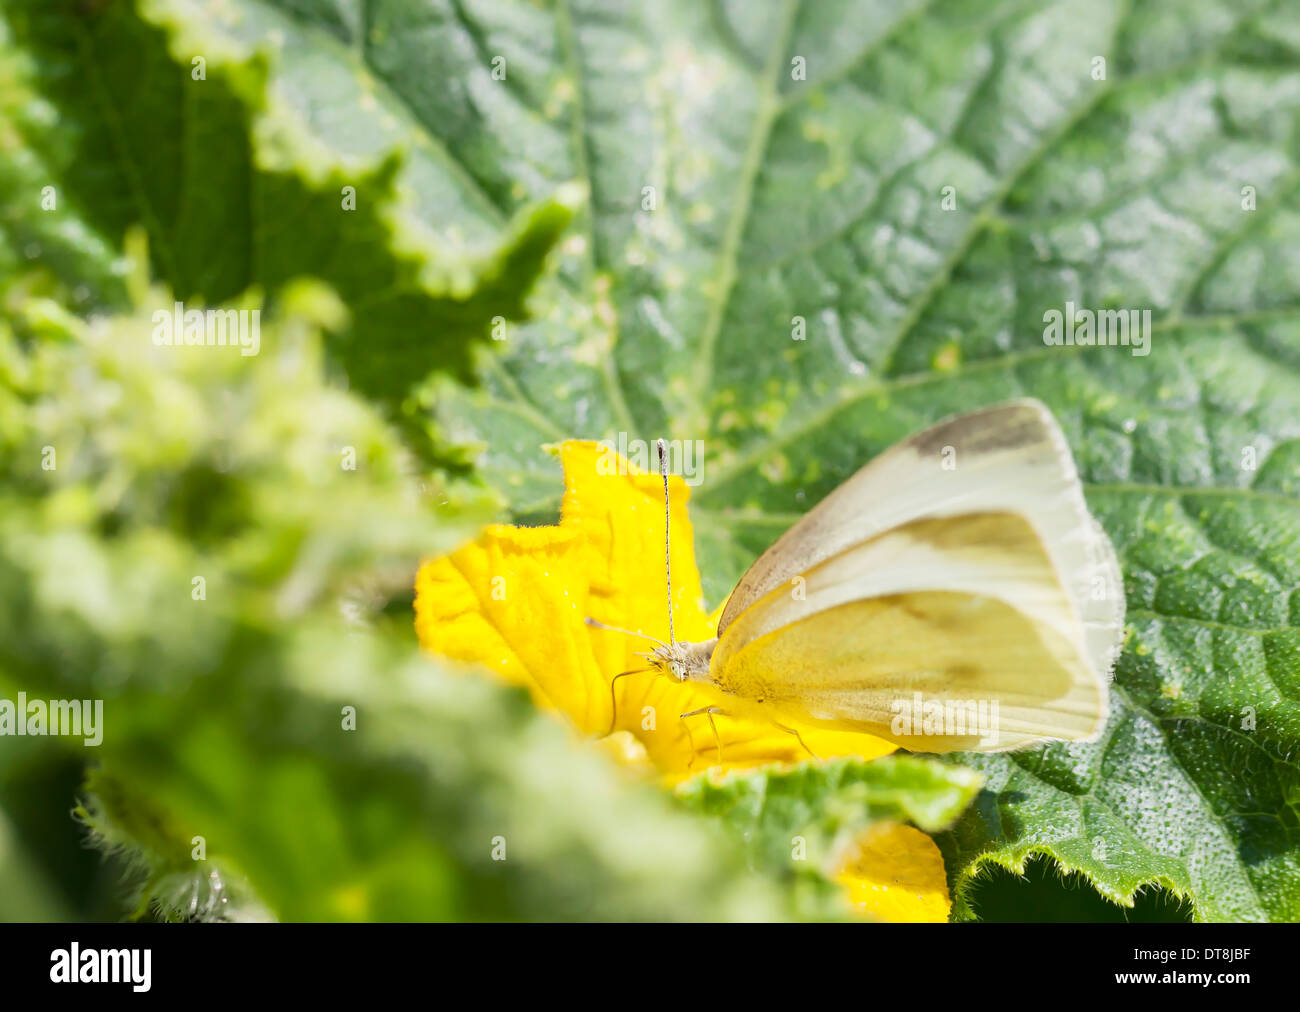 Schmetterling auf eine grüne Pflanze mit gelben Blüten weiß Stockfoto